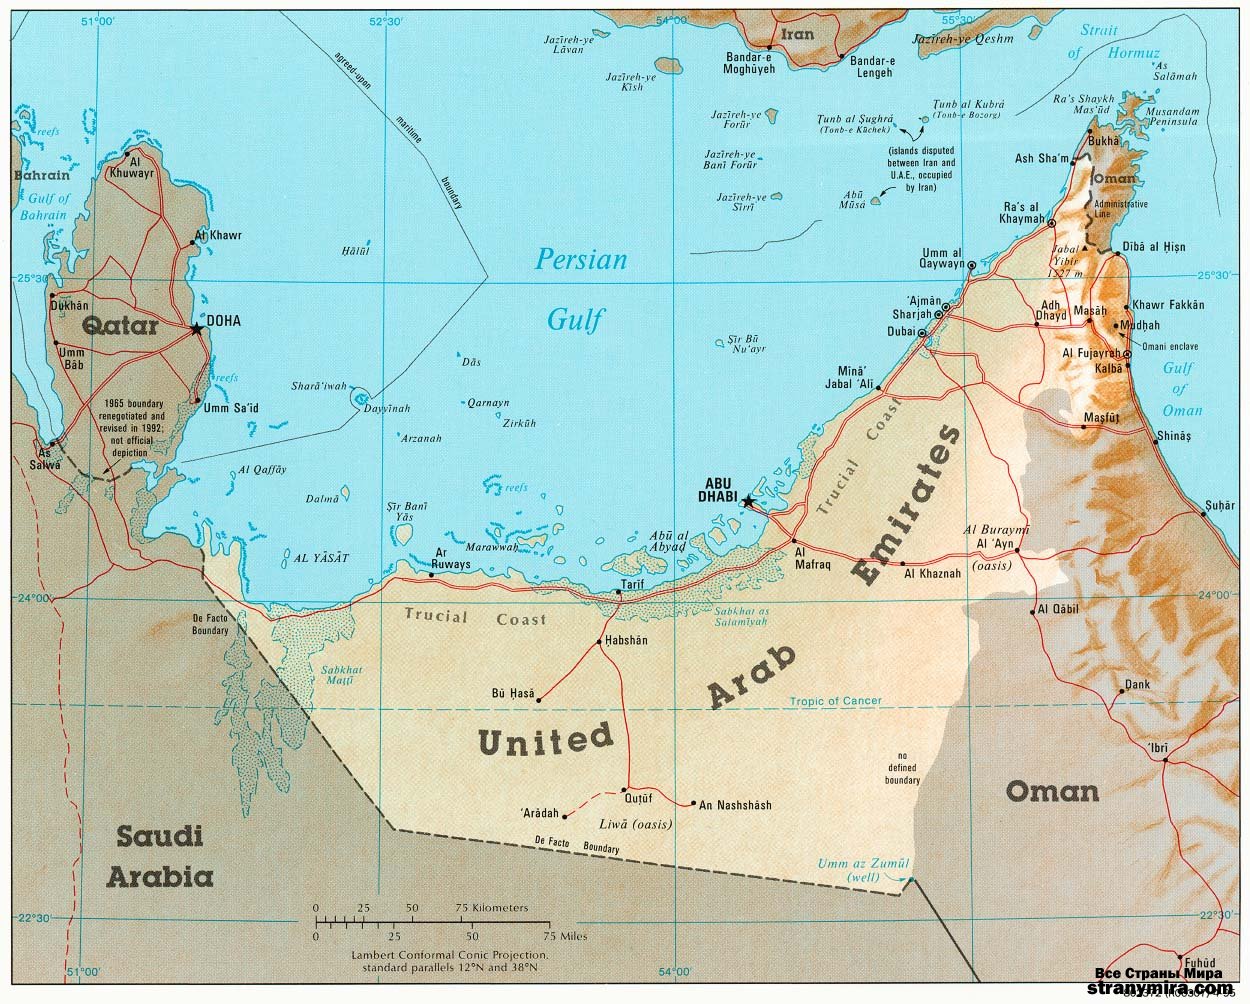 Реферат: Объединенные Арабские Эмираты ОАЭ